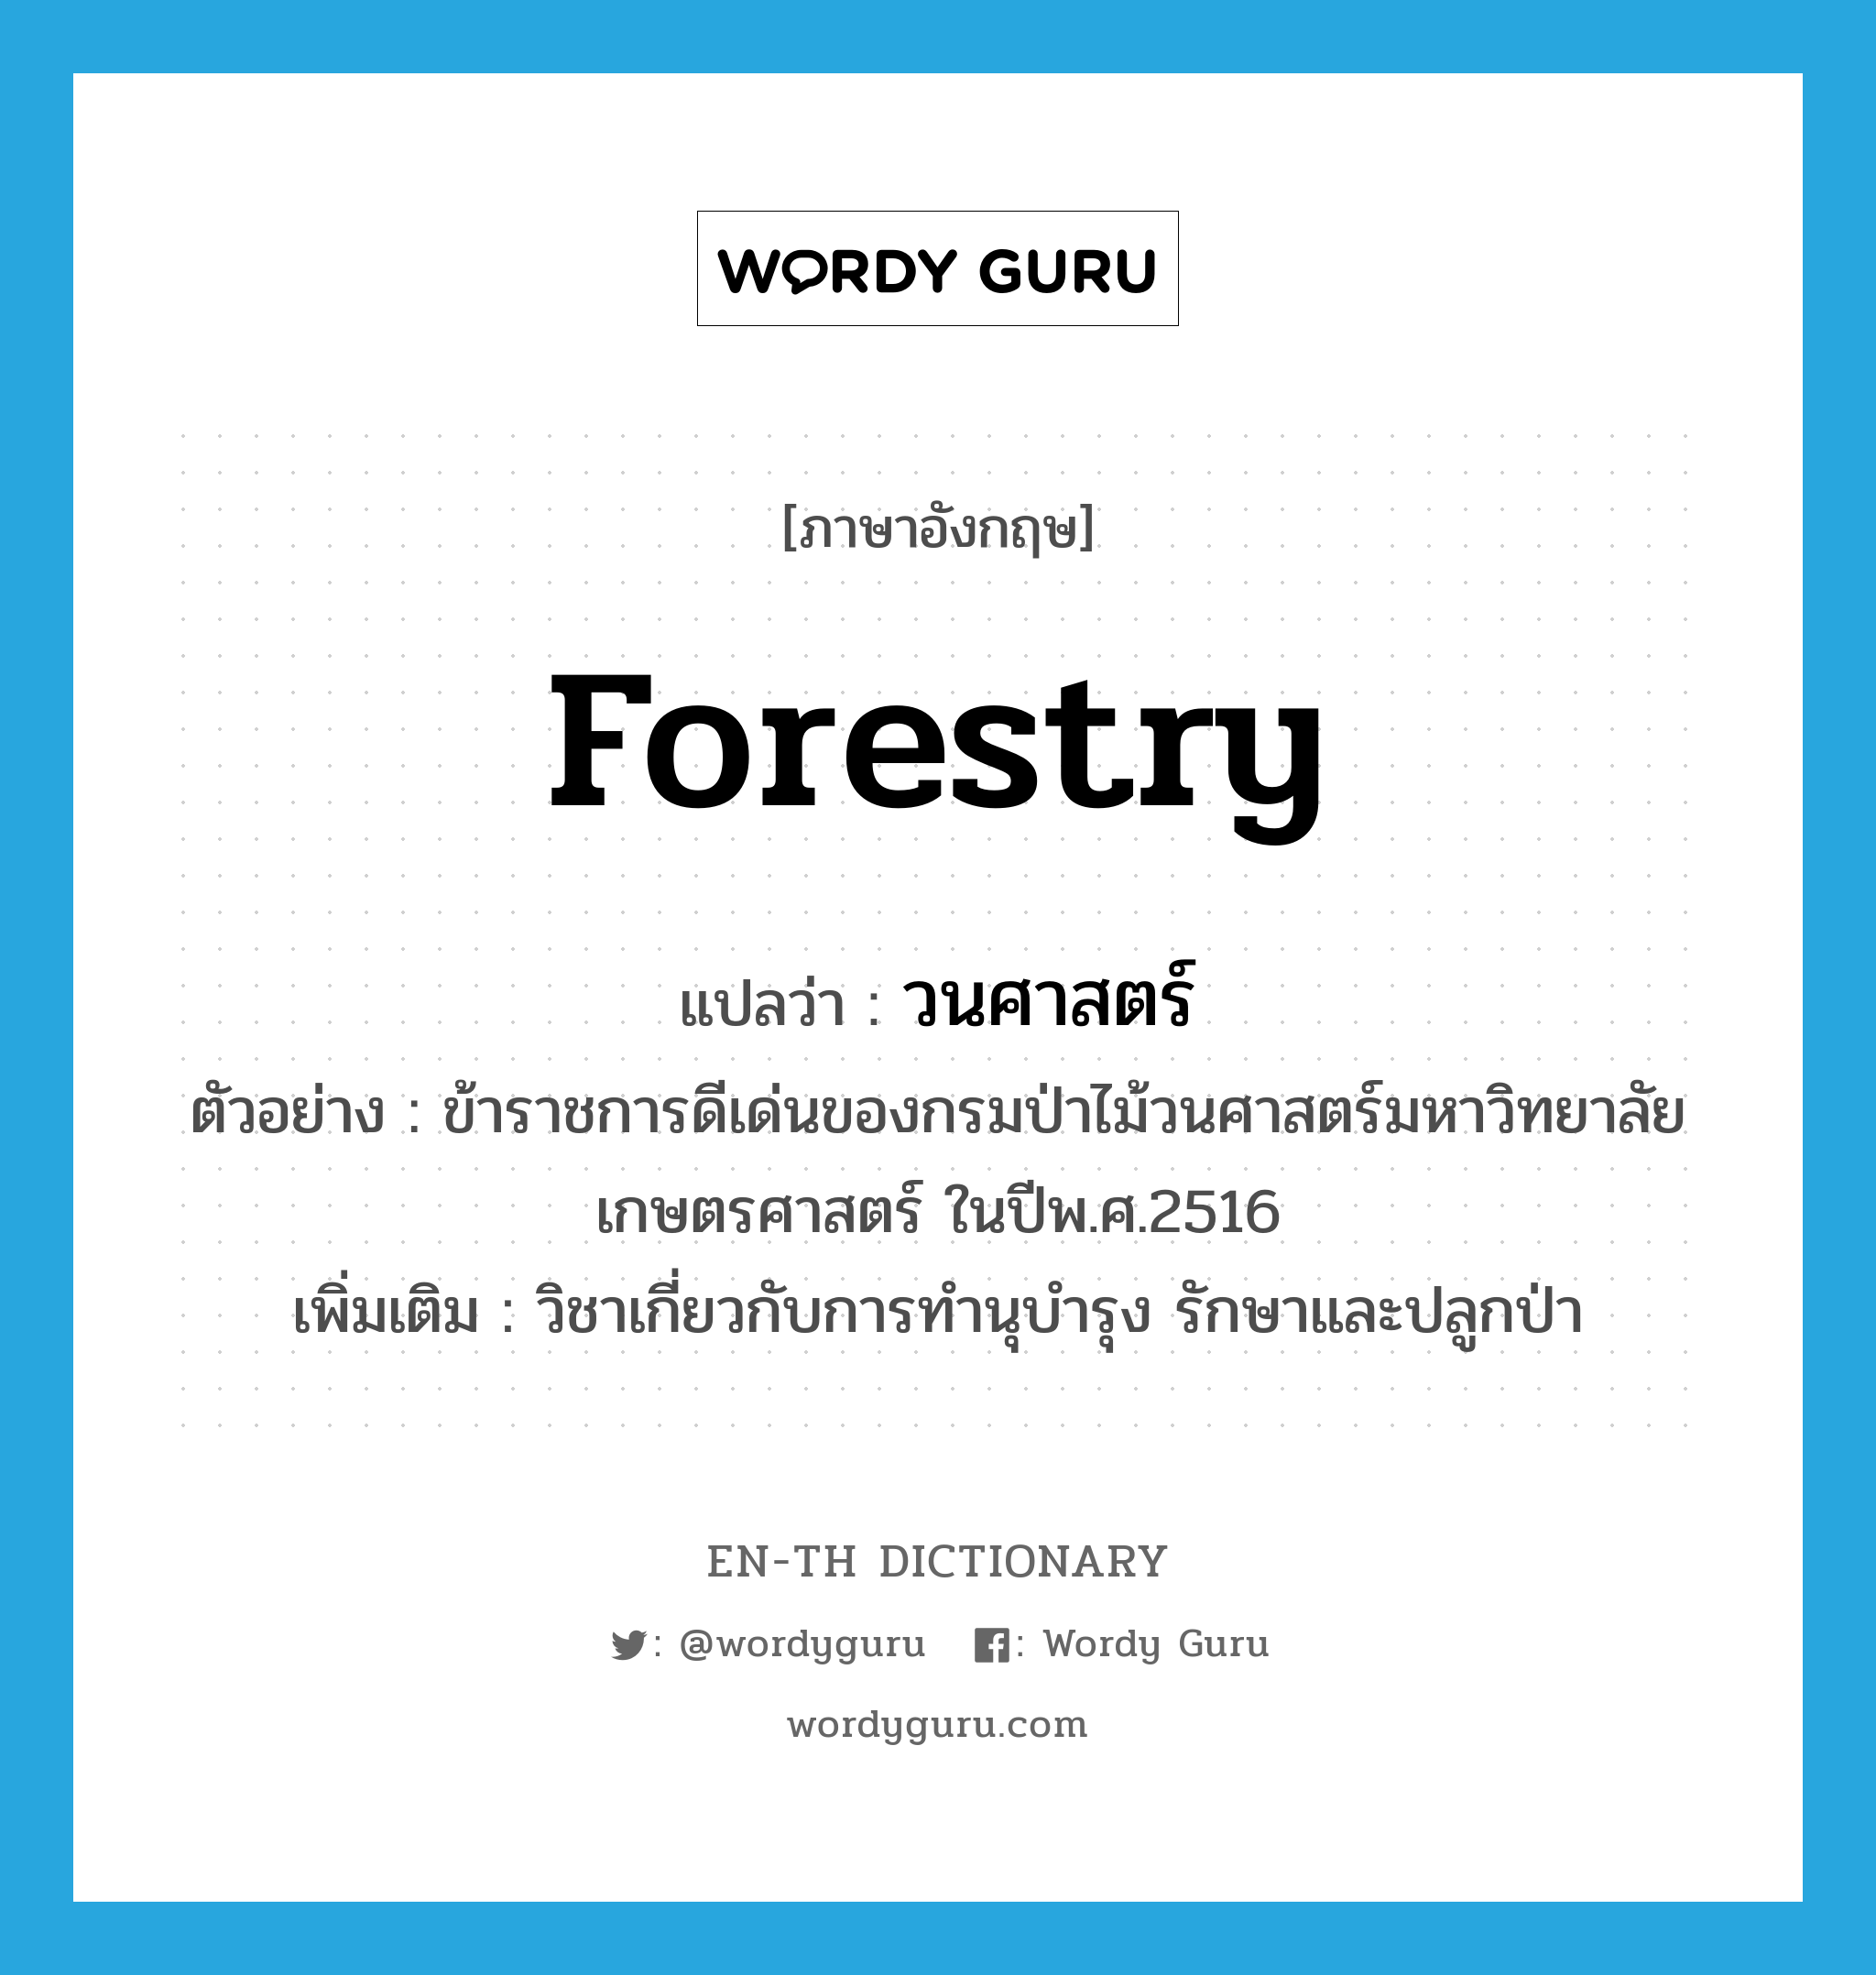 forestry แปลว่า?, คำศัพท์ภาษาอังกฤษ forestry แปลว่า วนศาสตร์ ประเภท N ตัวอย่าง ข้าราชการดีเด่นของกรมป่าไม้วนศาสตร์มหาวิทยาลัยเกษตรศาสตร์ ในปีพ.ศ.2516 เพิ่มเติม วิชาเกี่ยวกับการทำนุบำรุง รักษาและปลูกป่า หมวด N